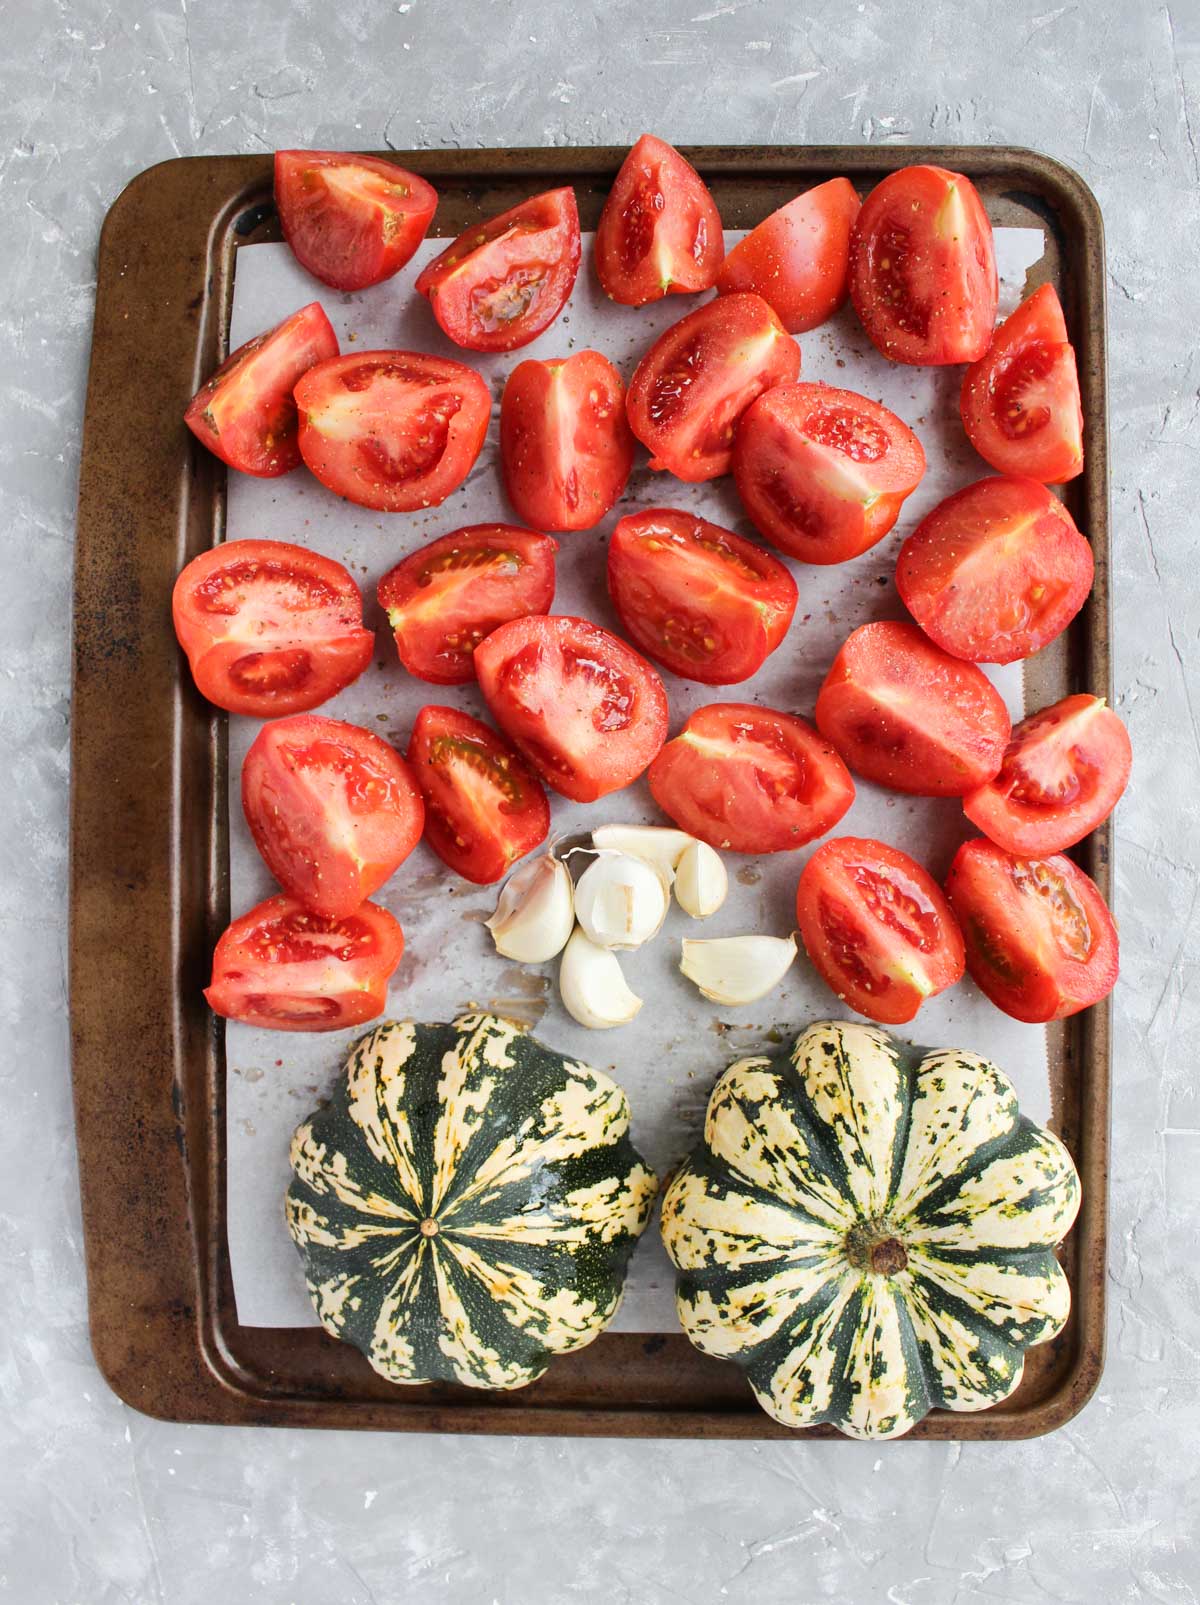 Baking sheet with tomatoes, garlic, and squash.